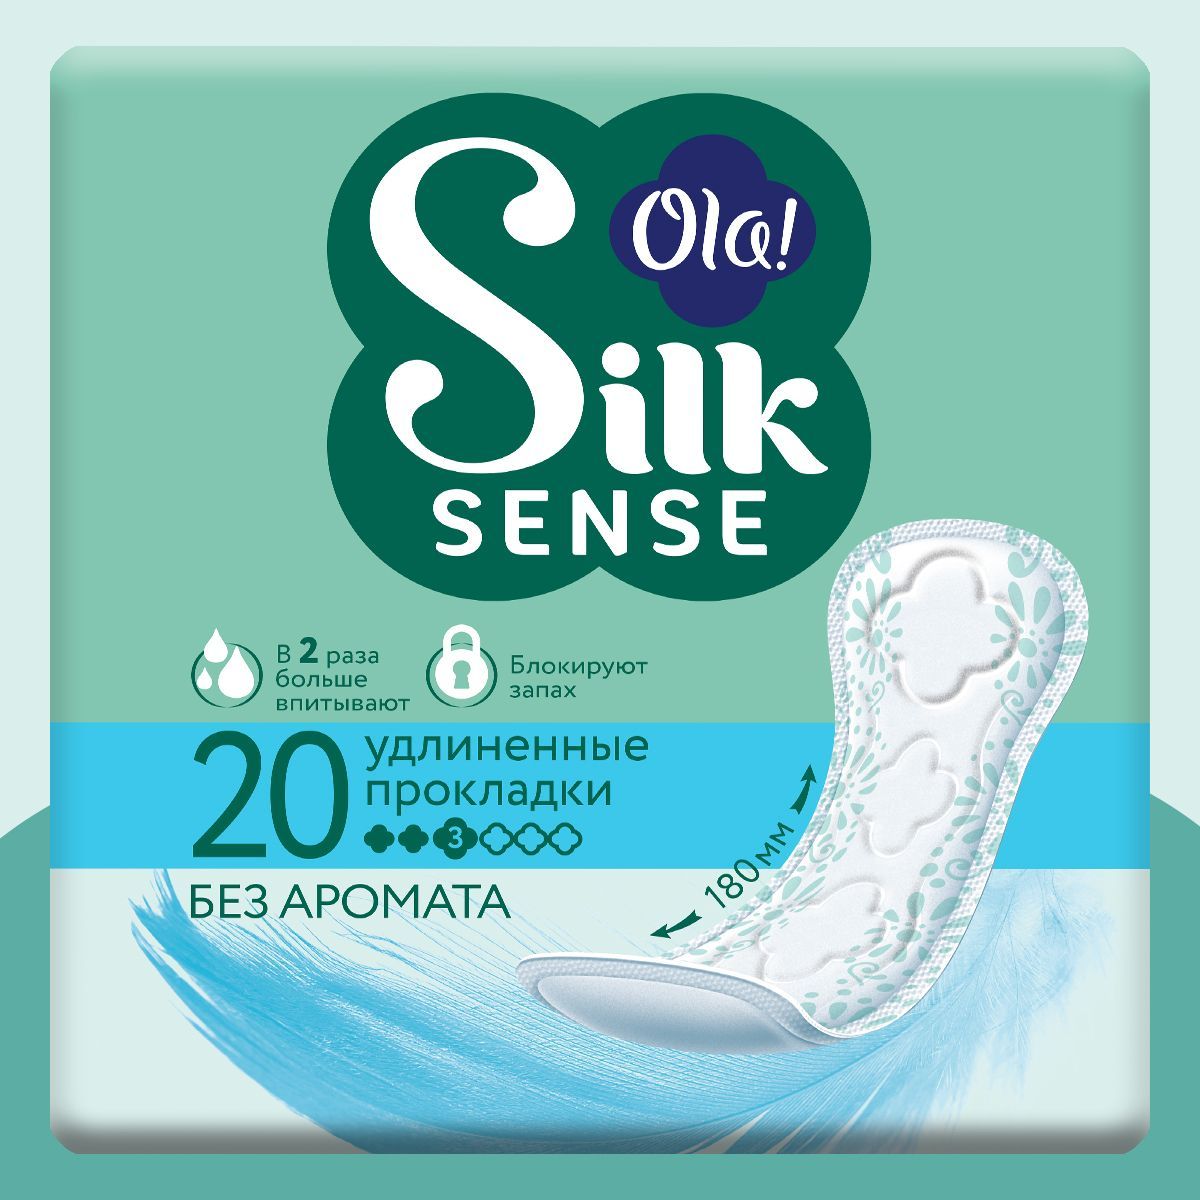 Ежедневные прокладки Ola! Silk Sense удлиненные без аромата 20 шт - фото 1